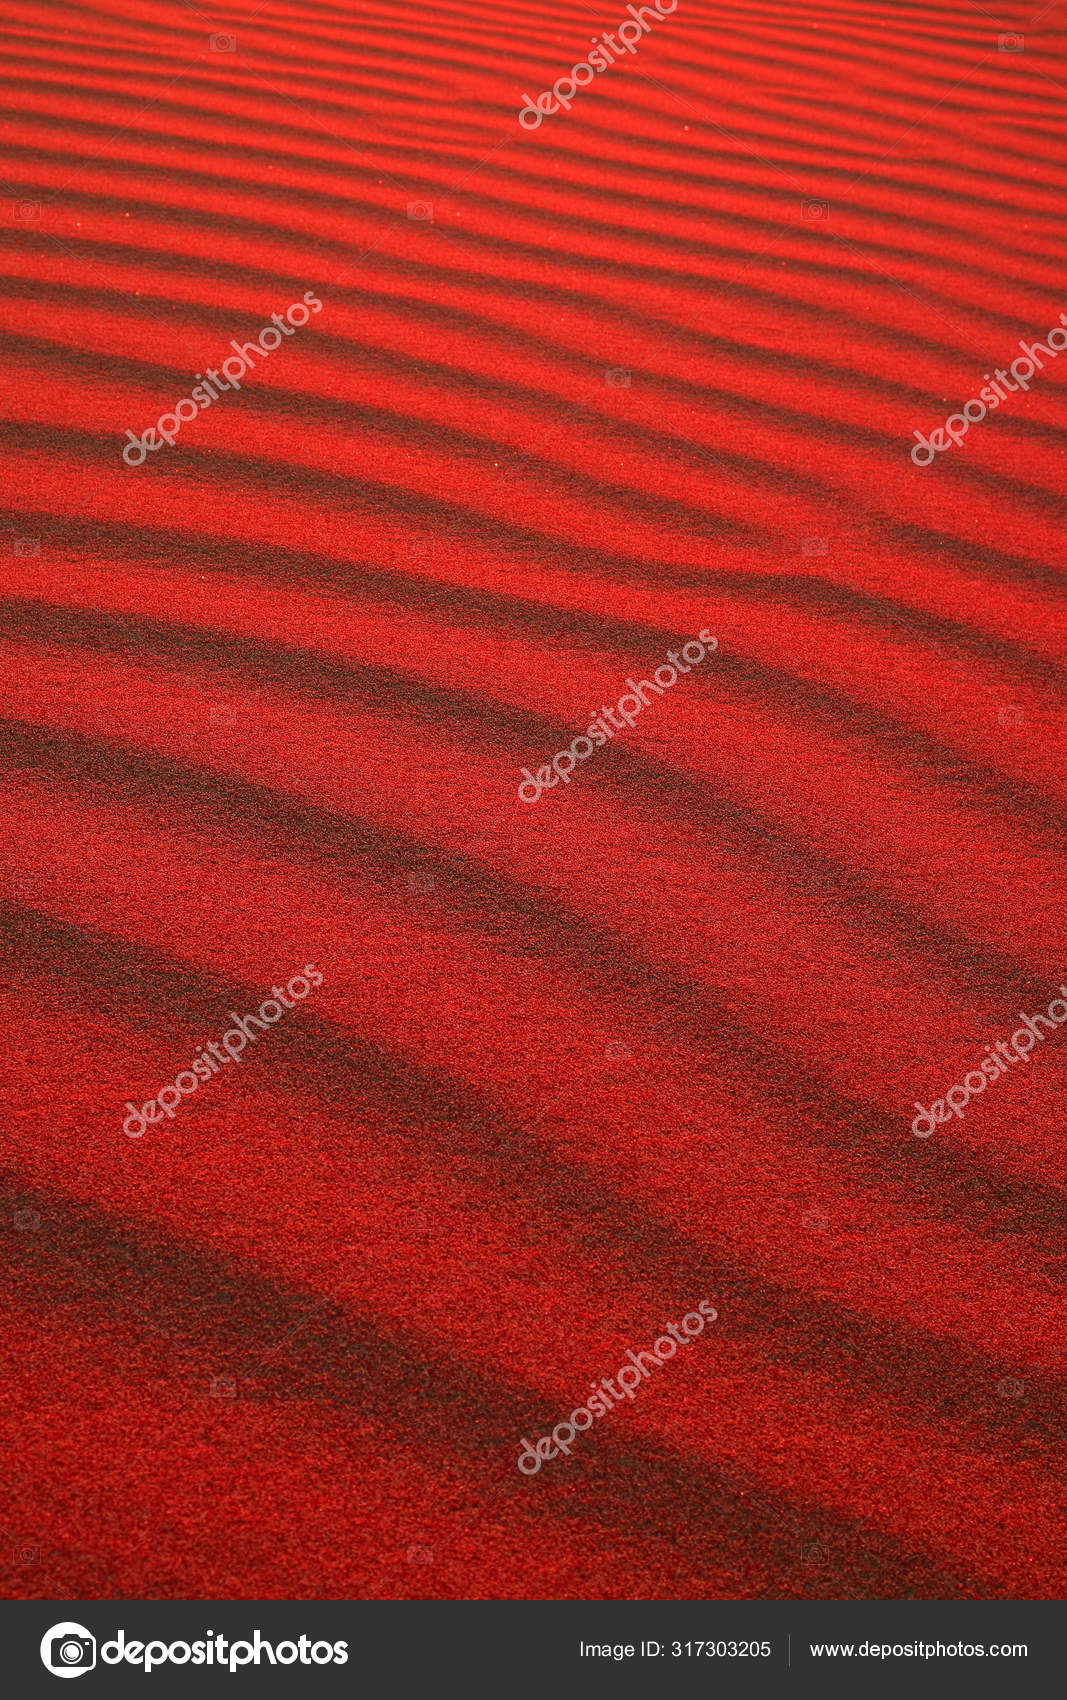 壁紙や背景のためのポップアートスタイルの砂漠の砂のリップルパターンの垂直画像 ストック写真 C Shinylion